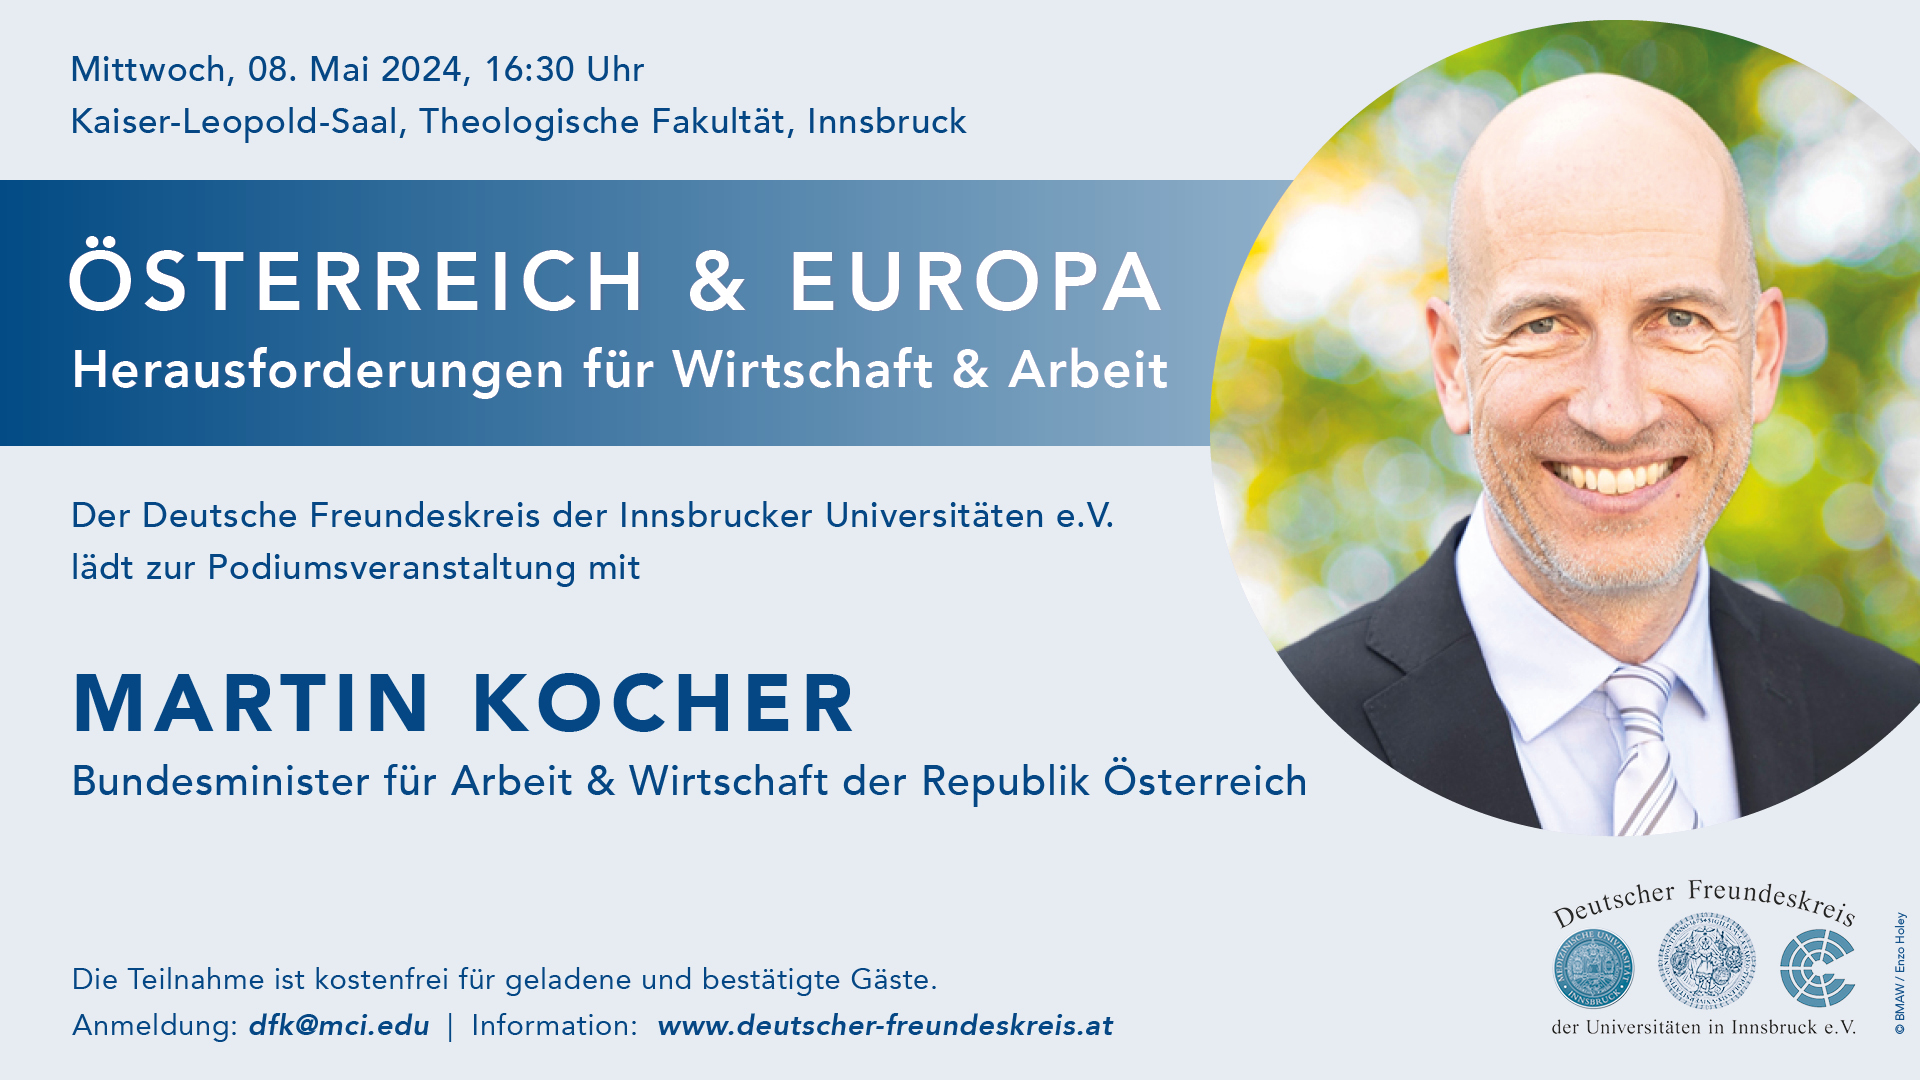 Martin Kocher, Bundesminister für Arbeit & Wirtschaft der Republik Österreich